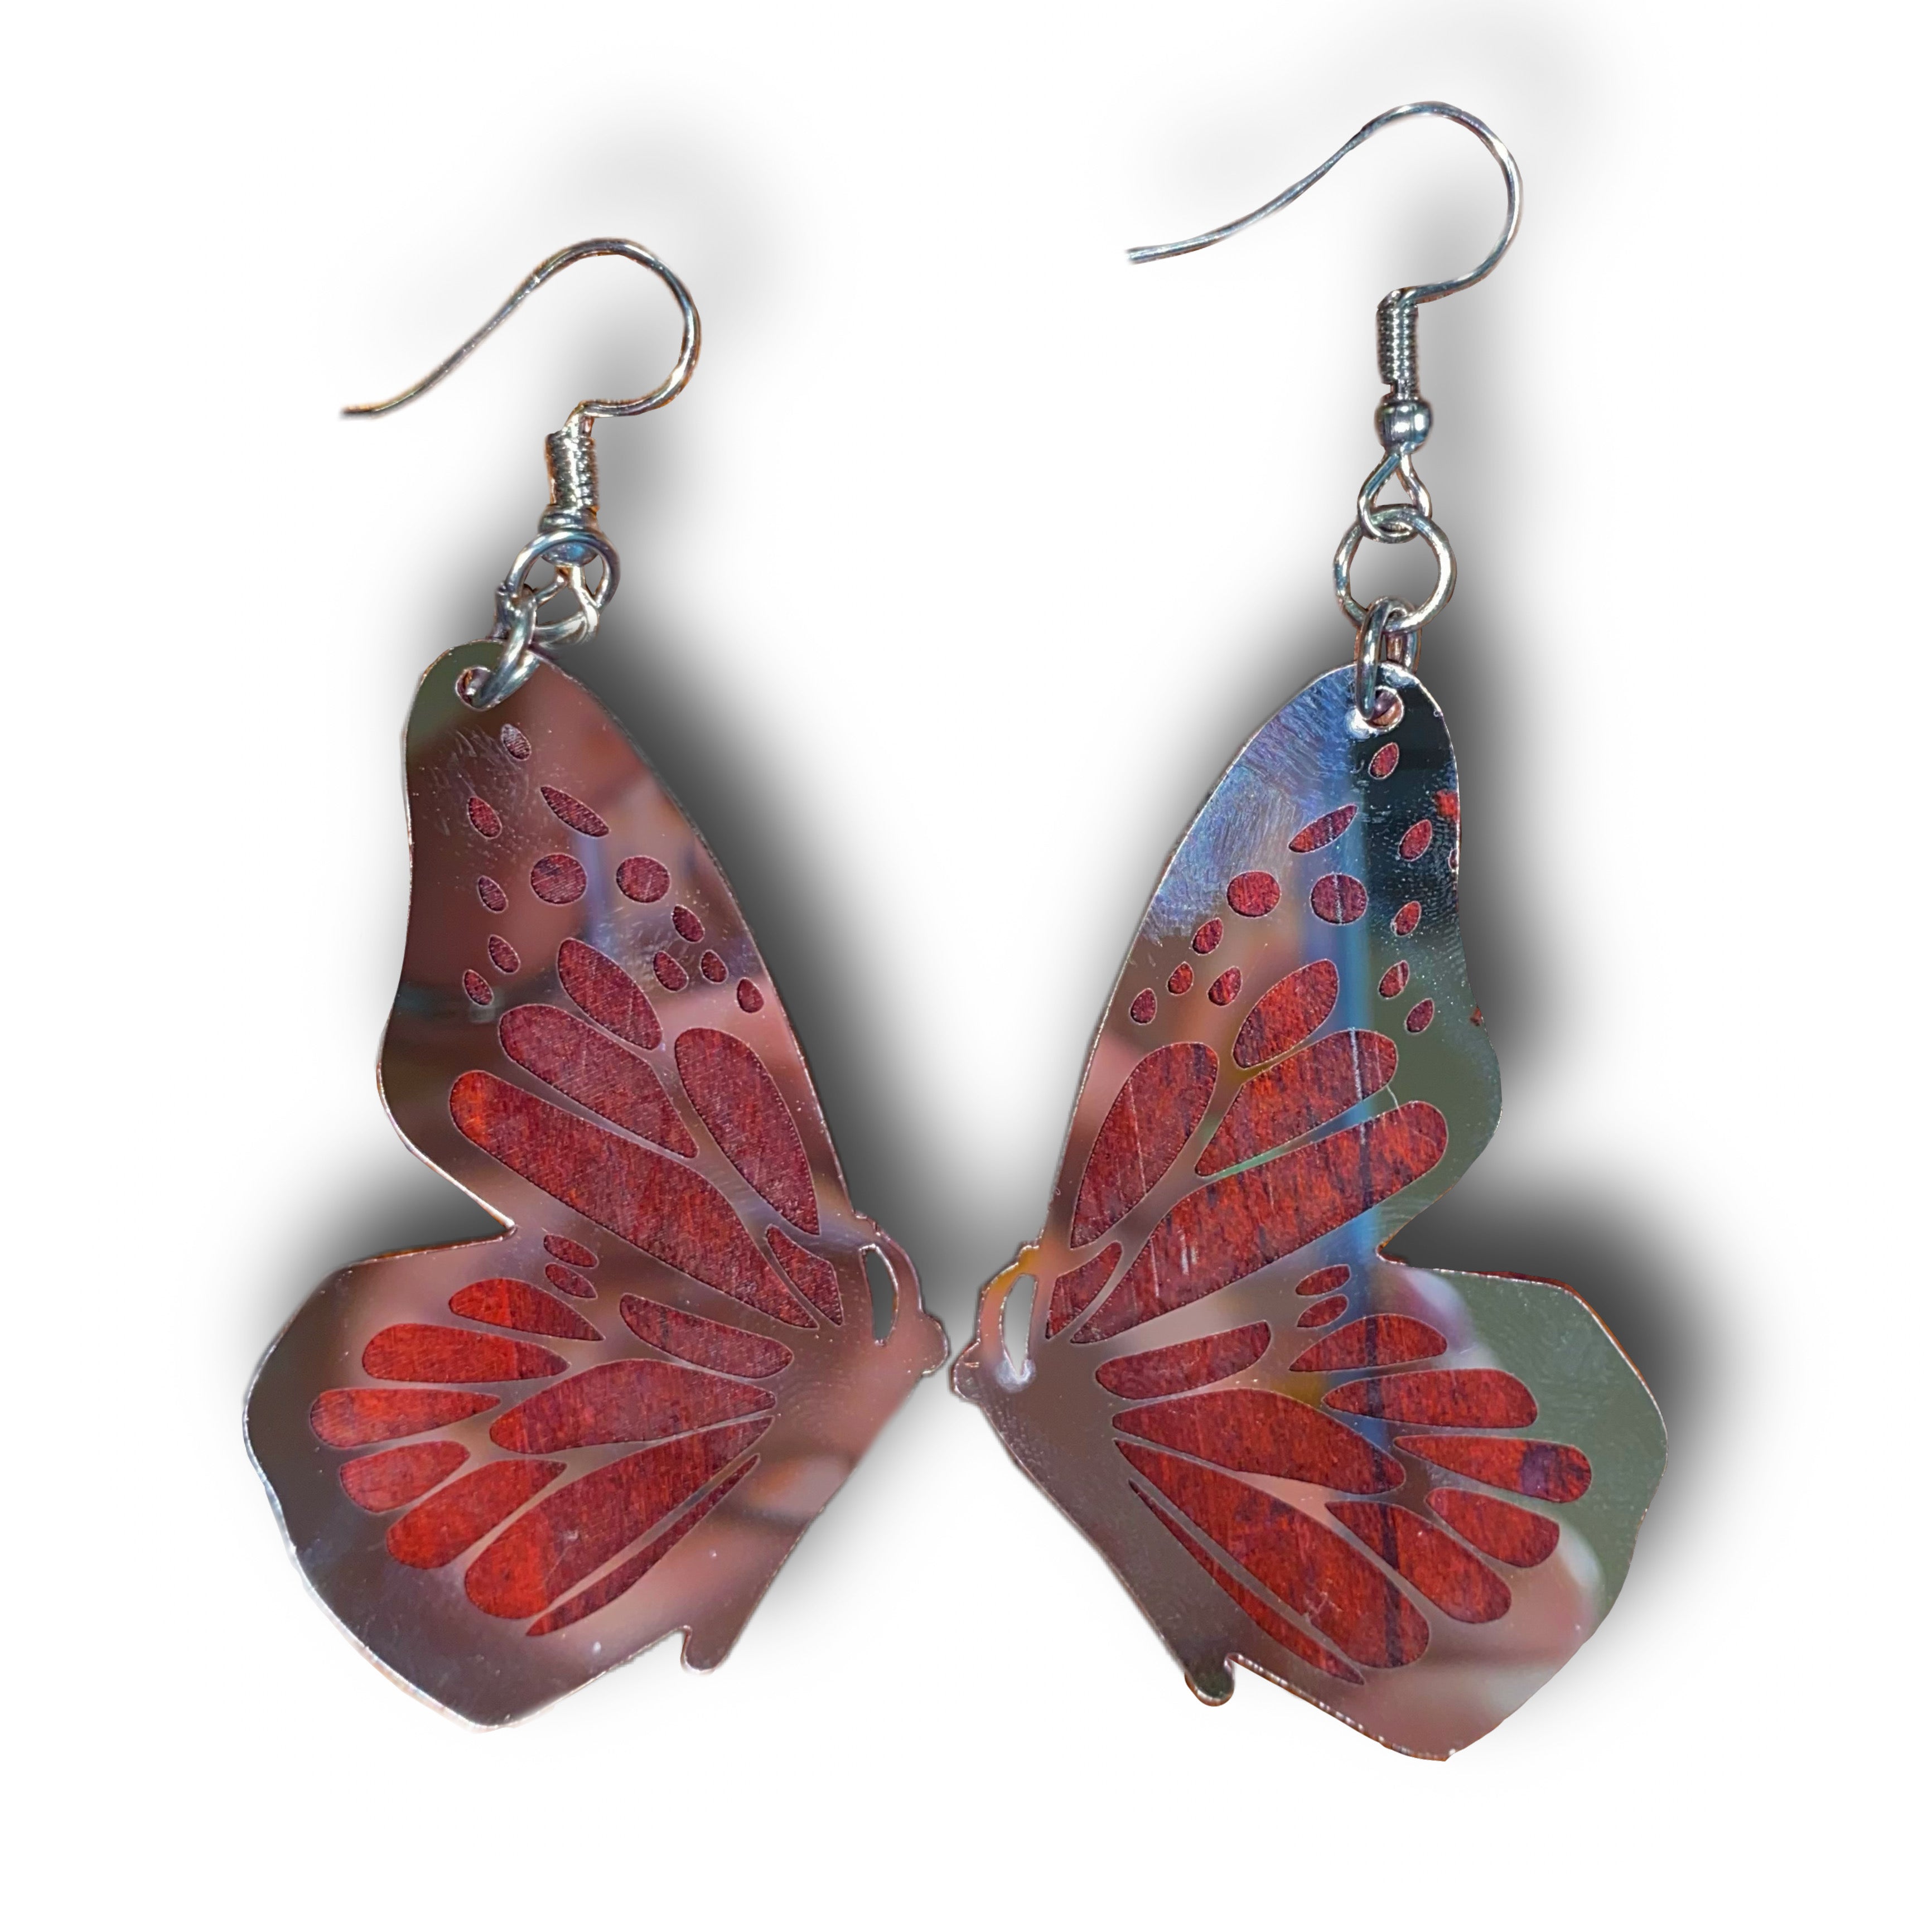 Butterfly Earrings - Blue Zircon AB Crystal - Teal - Butterfly Jewelry